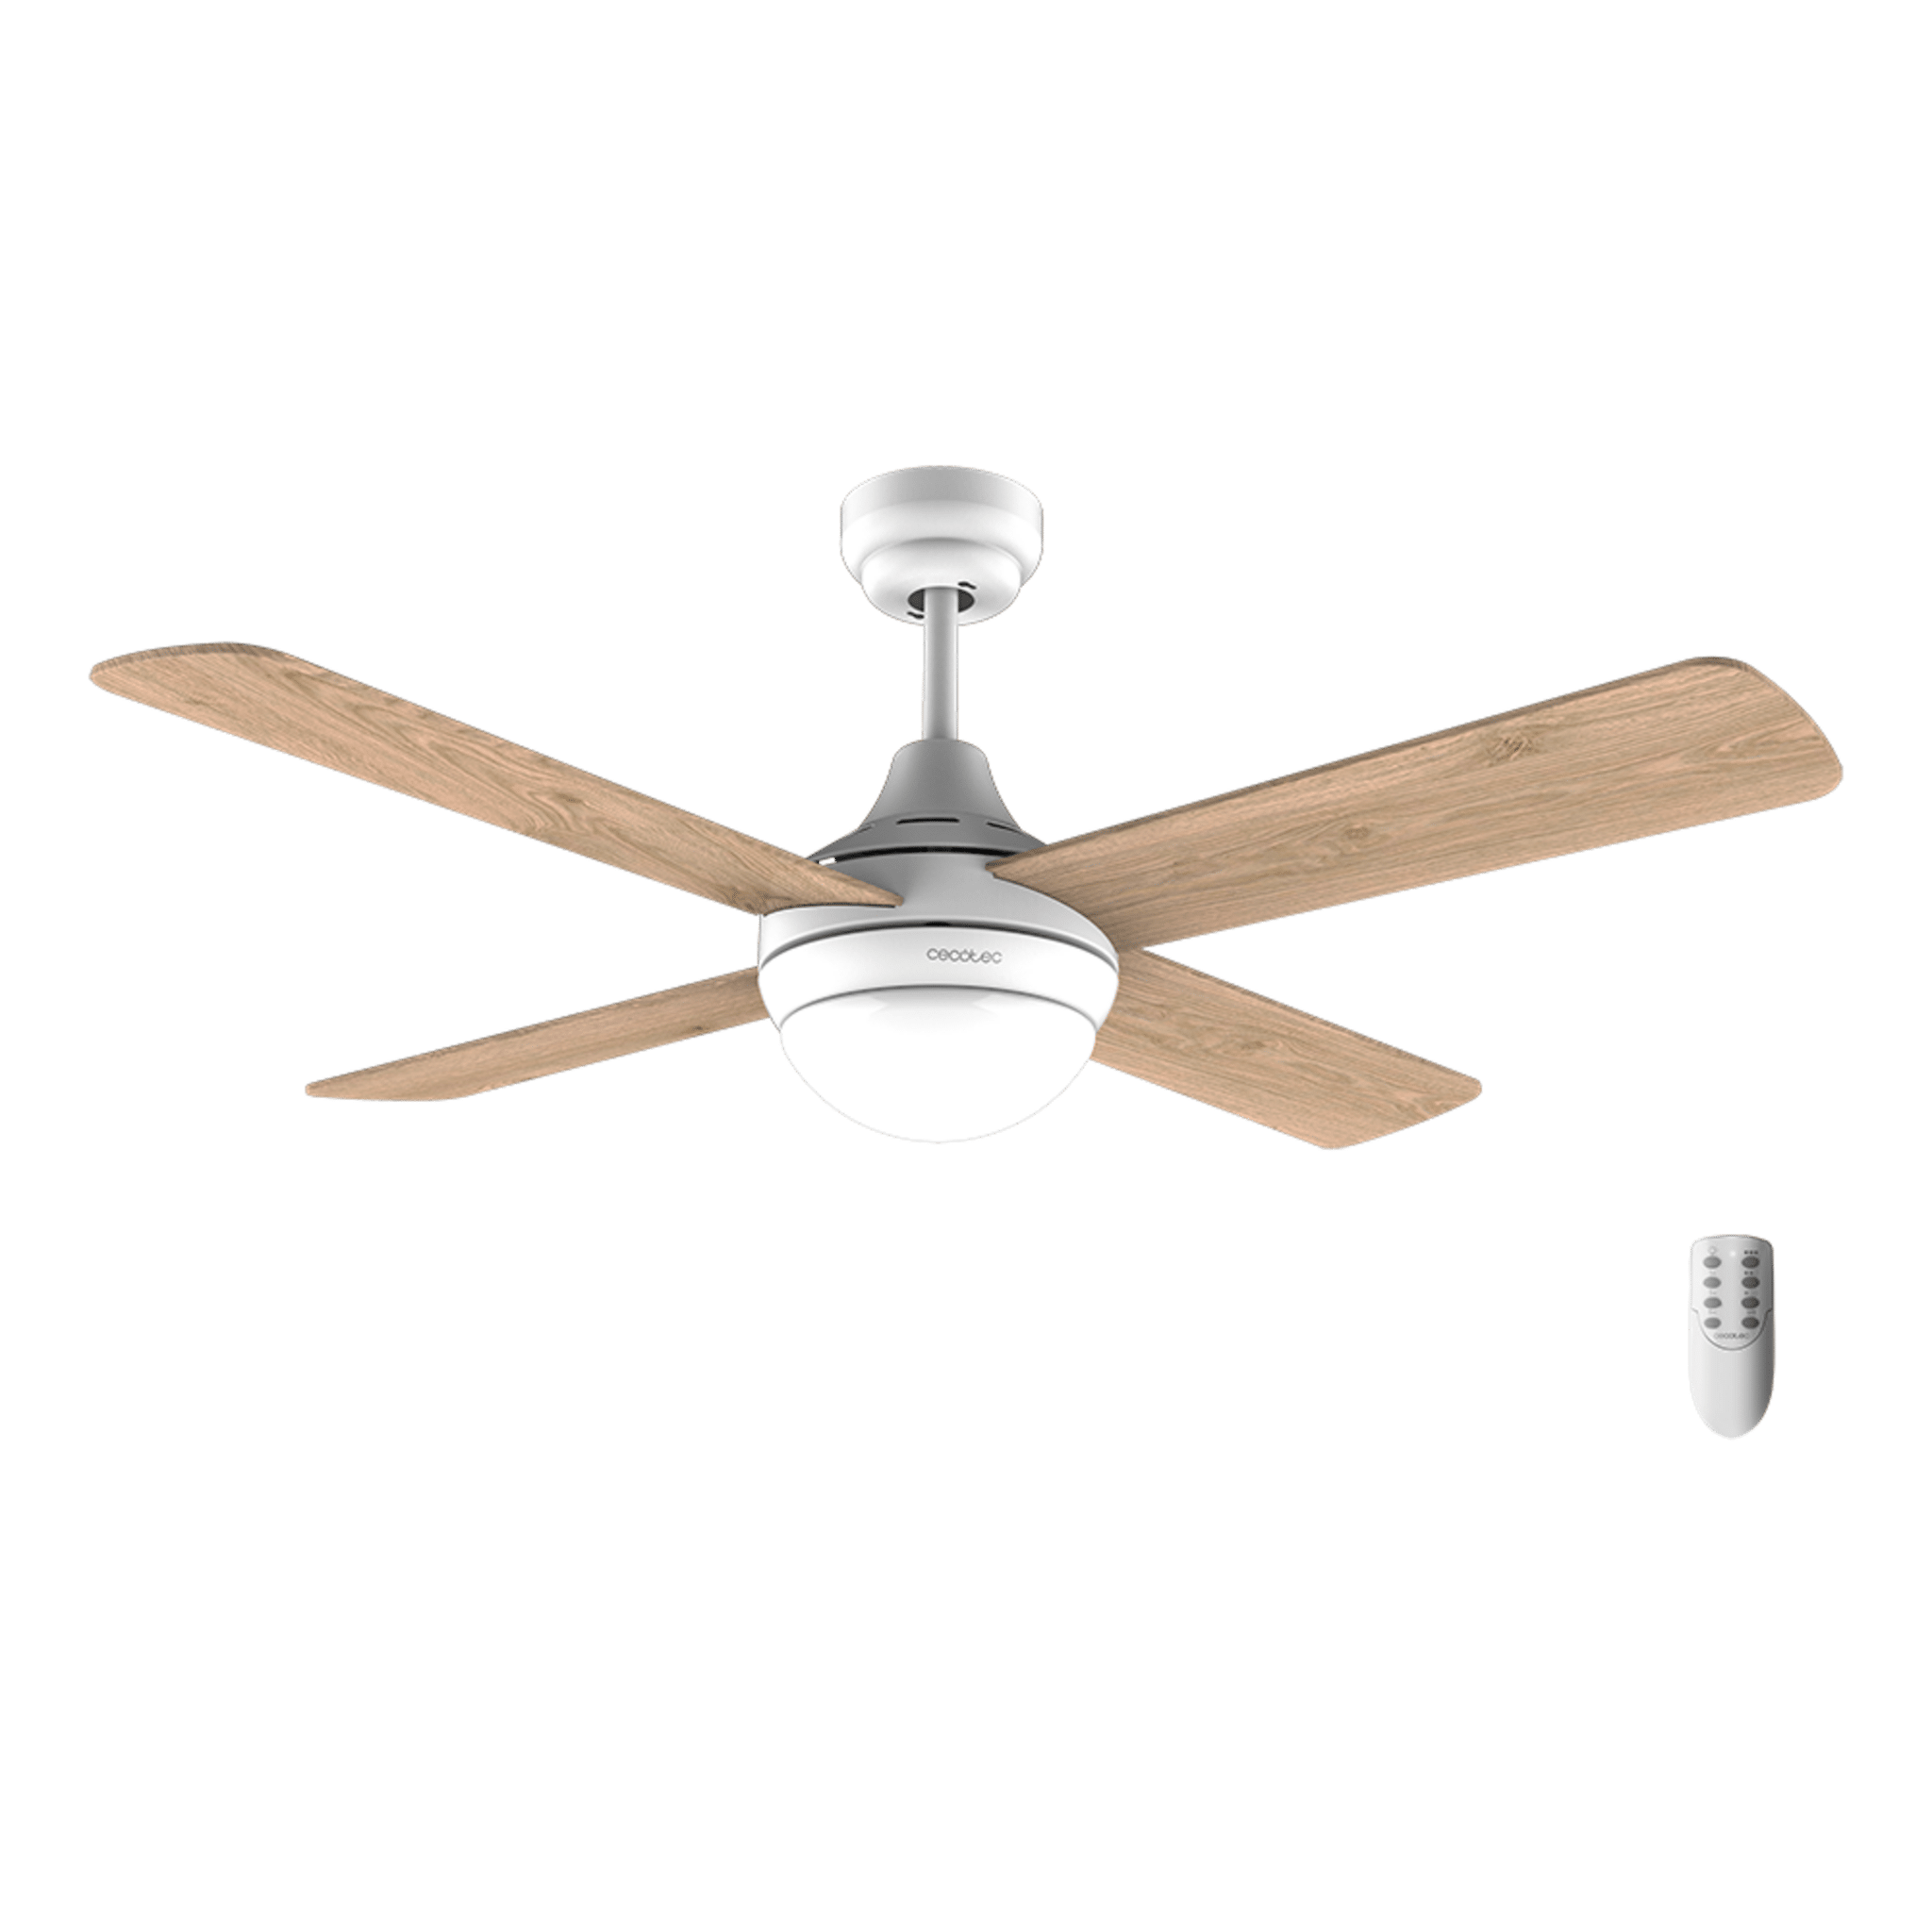 Montaje de los ventiladores de techo EnergySilence Aero de Cecotec 